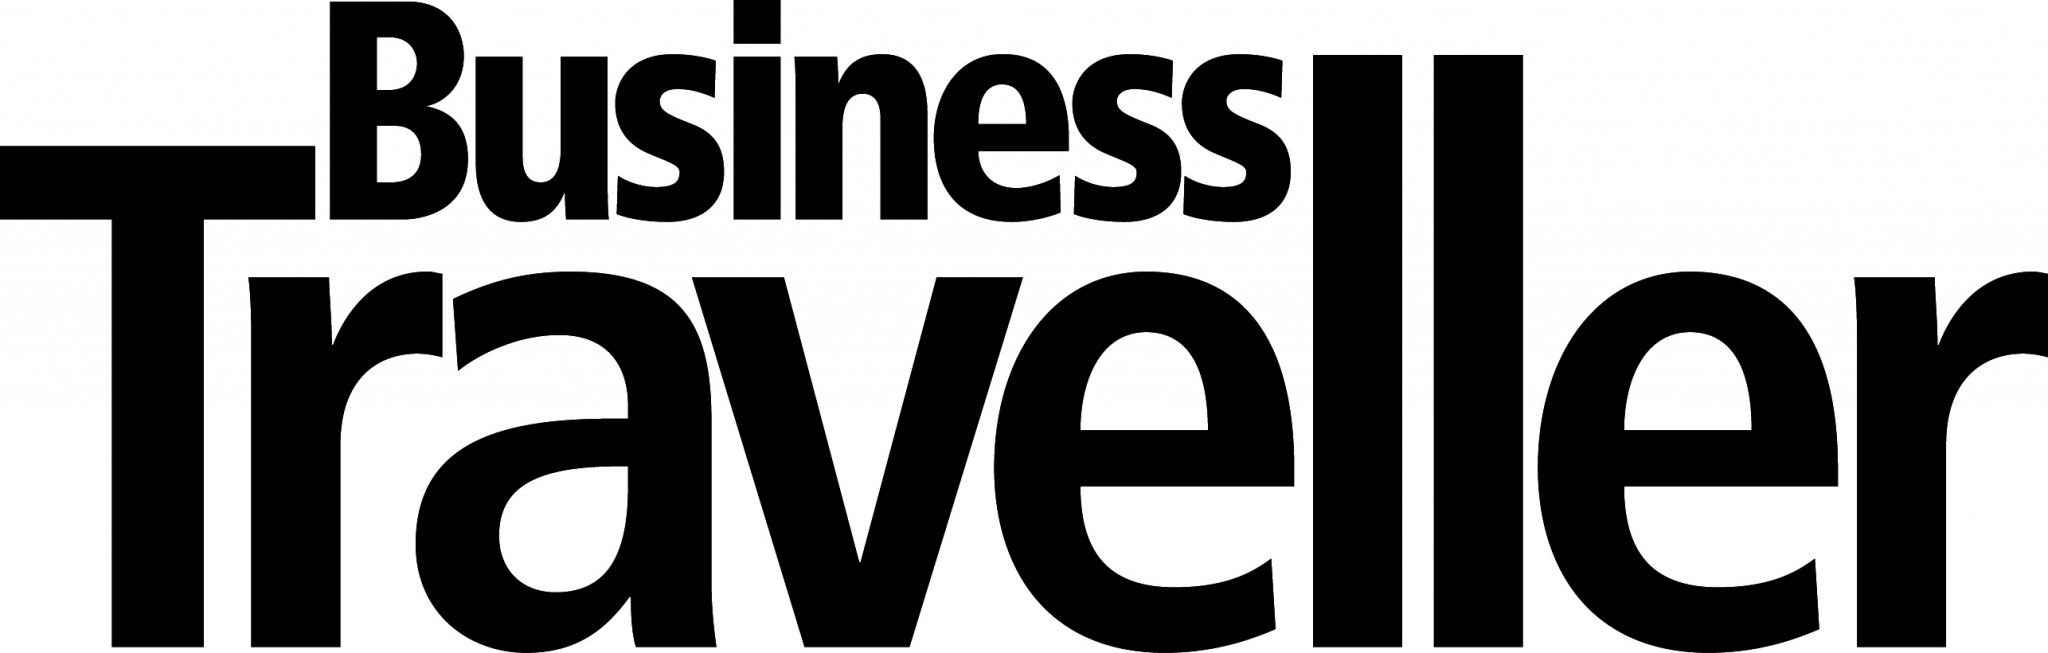 business traveller middle east logo